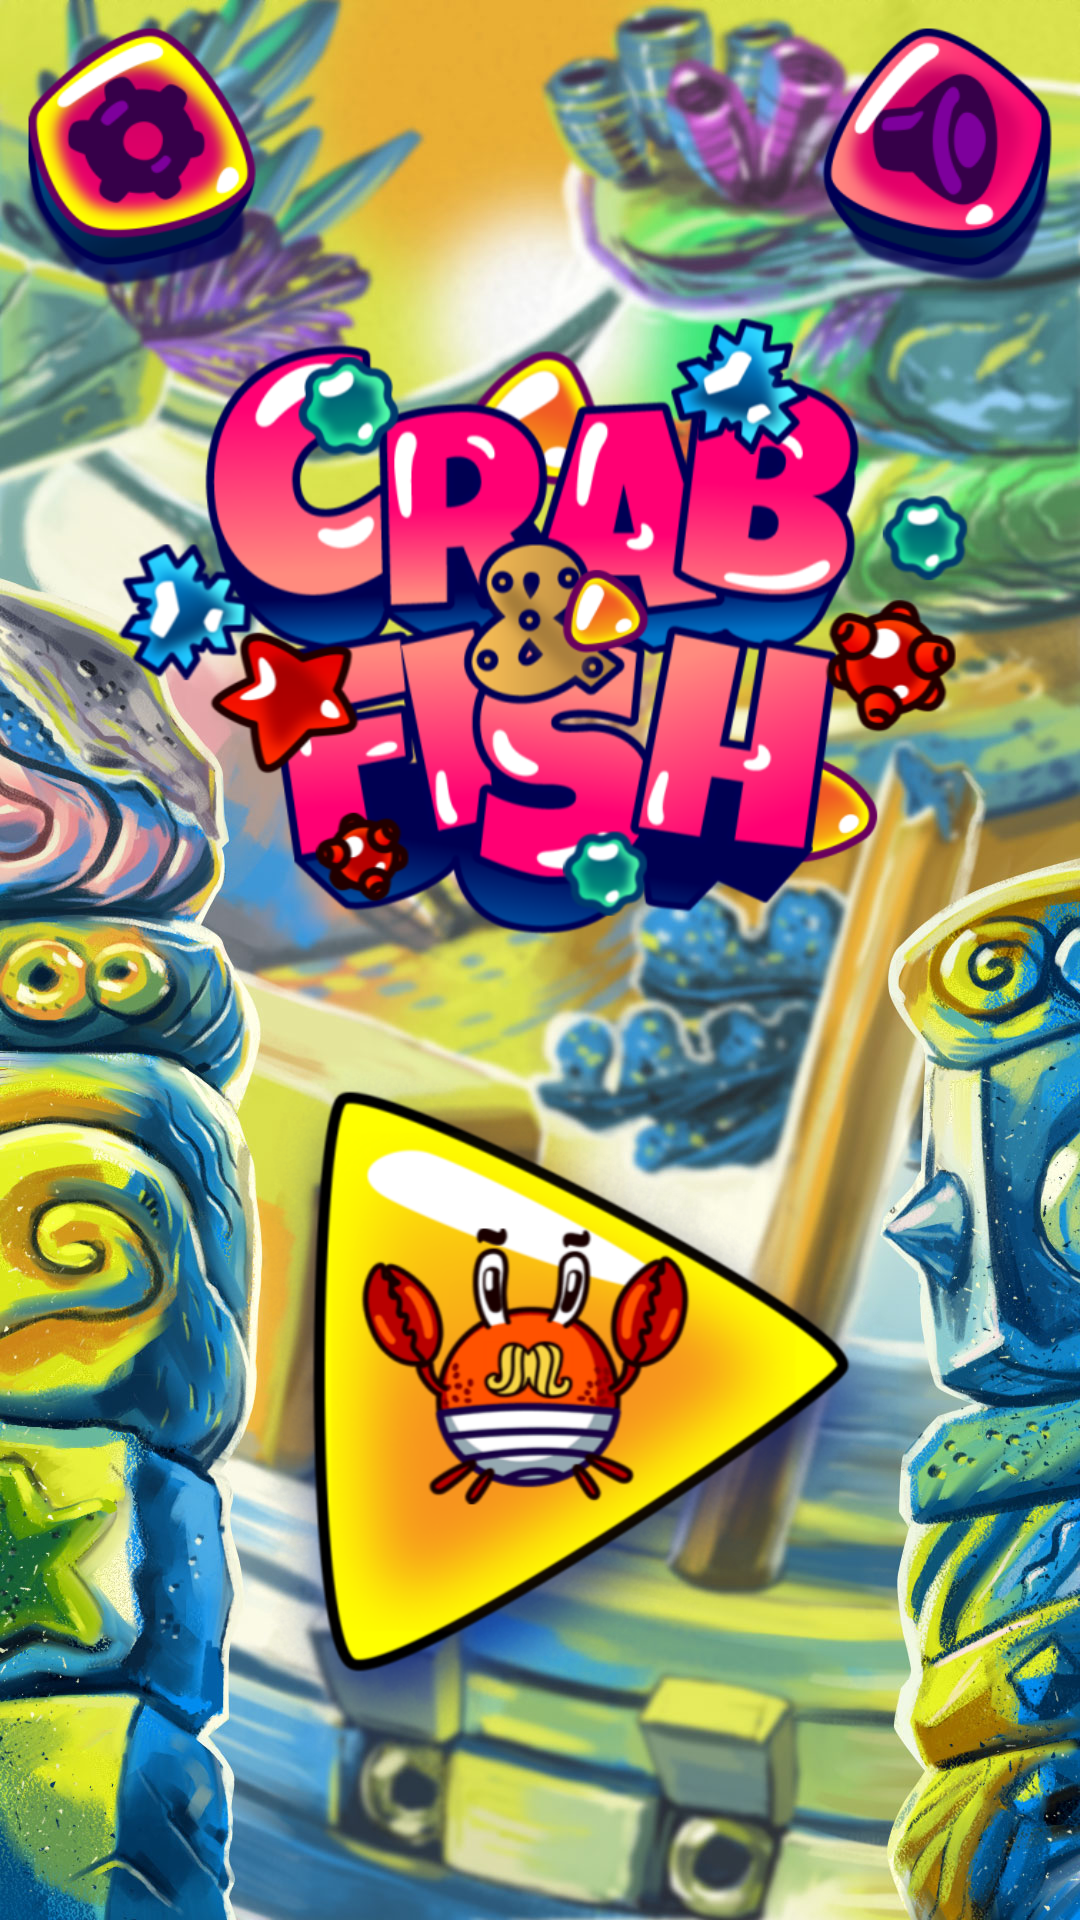 Screenshot 1 of Crabe et poisson : six coins dans le bloc des héros 1.0